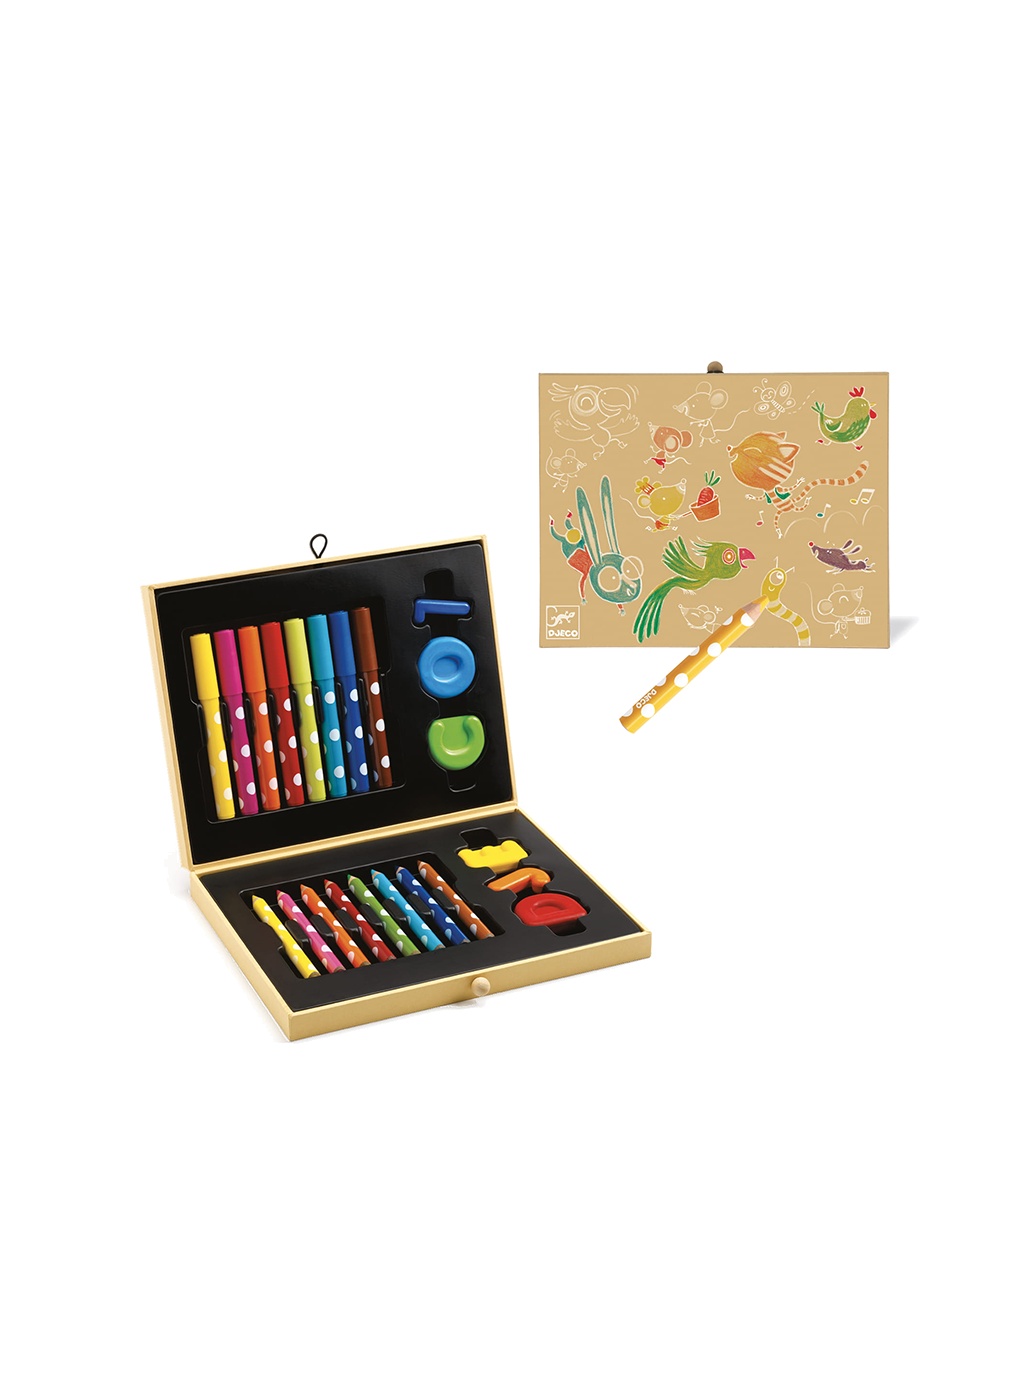 Caja artística de colores.